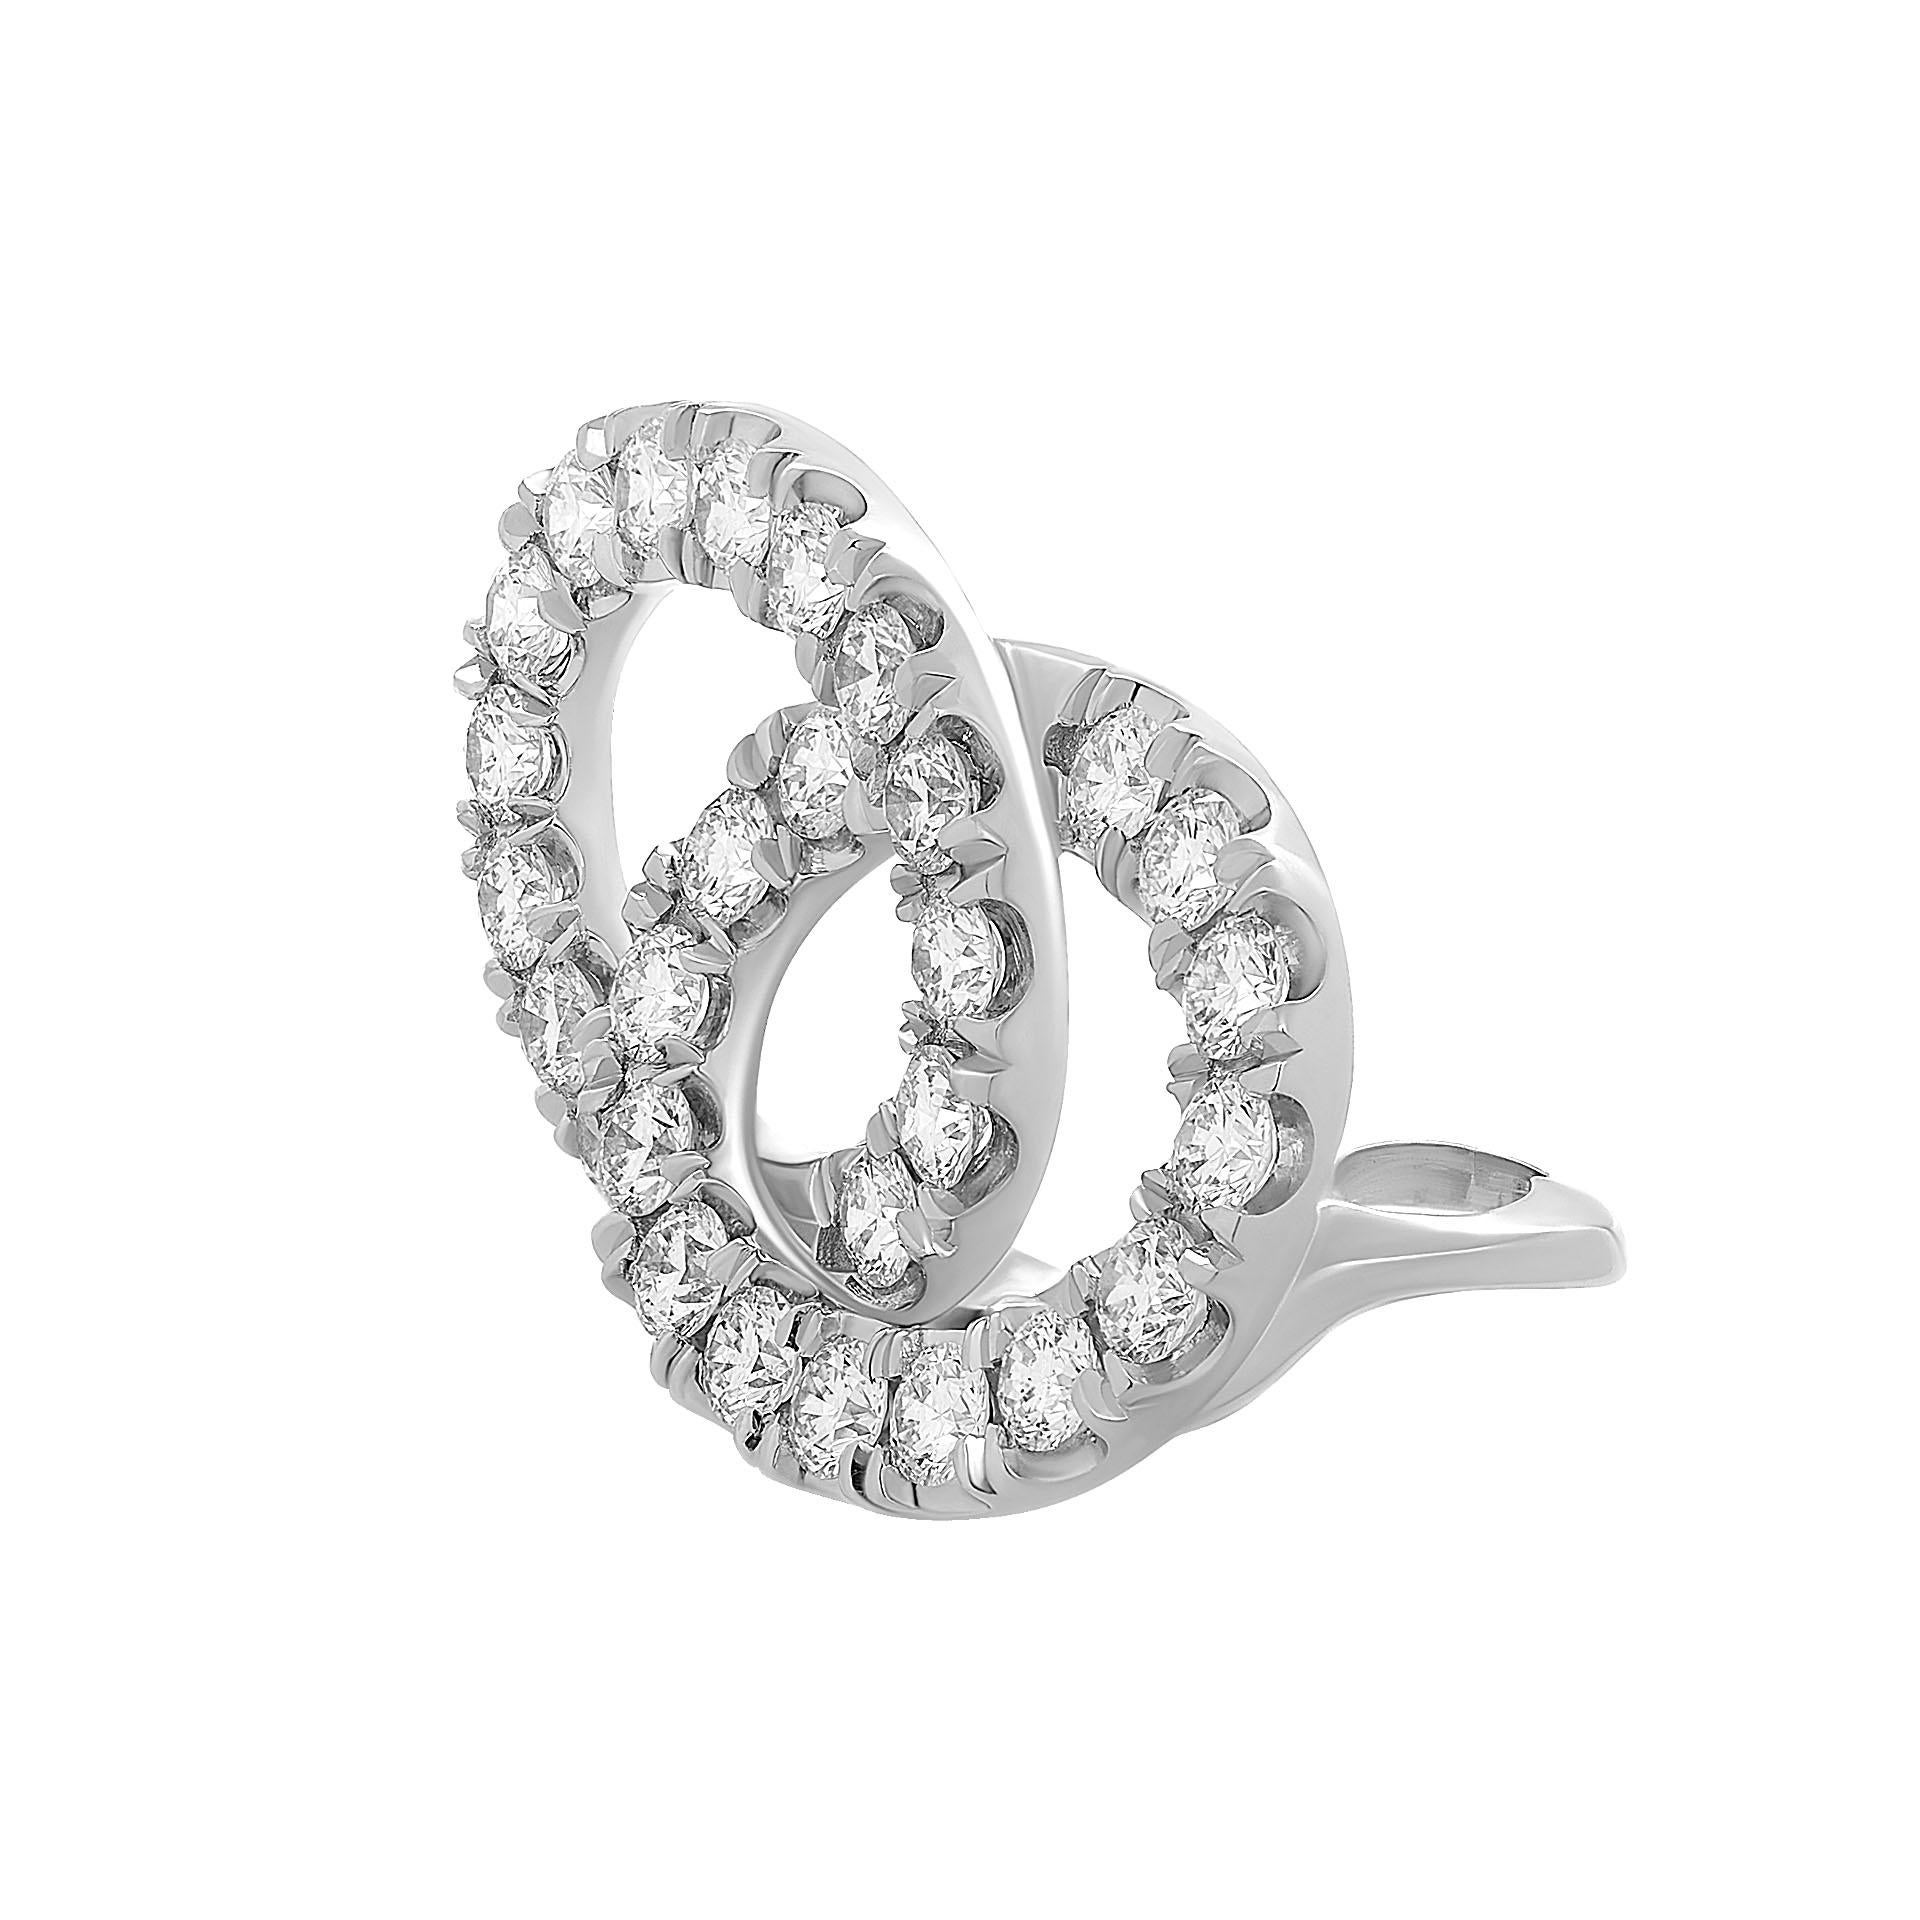 Überlappende Doppelkreis-Ohrringe mit Diamanten aus 18K Weißgold in 18K Weißgold-Ohrringen 
mit 56 Diamanten von je 2,9 mm und insgesamt 5,04 Karat, 
F-G Farbe VVS-VS Reinheit 
